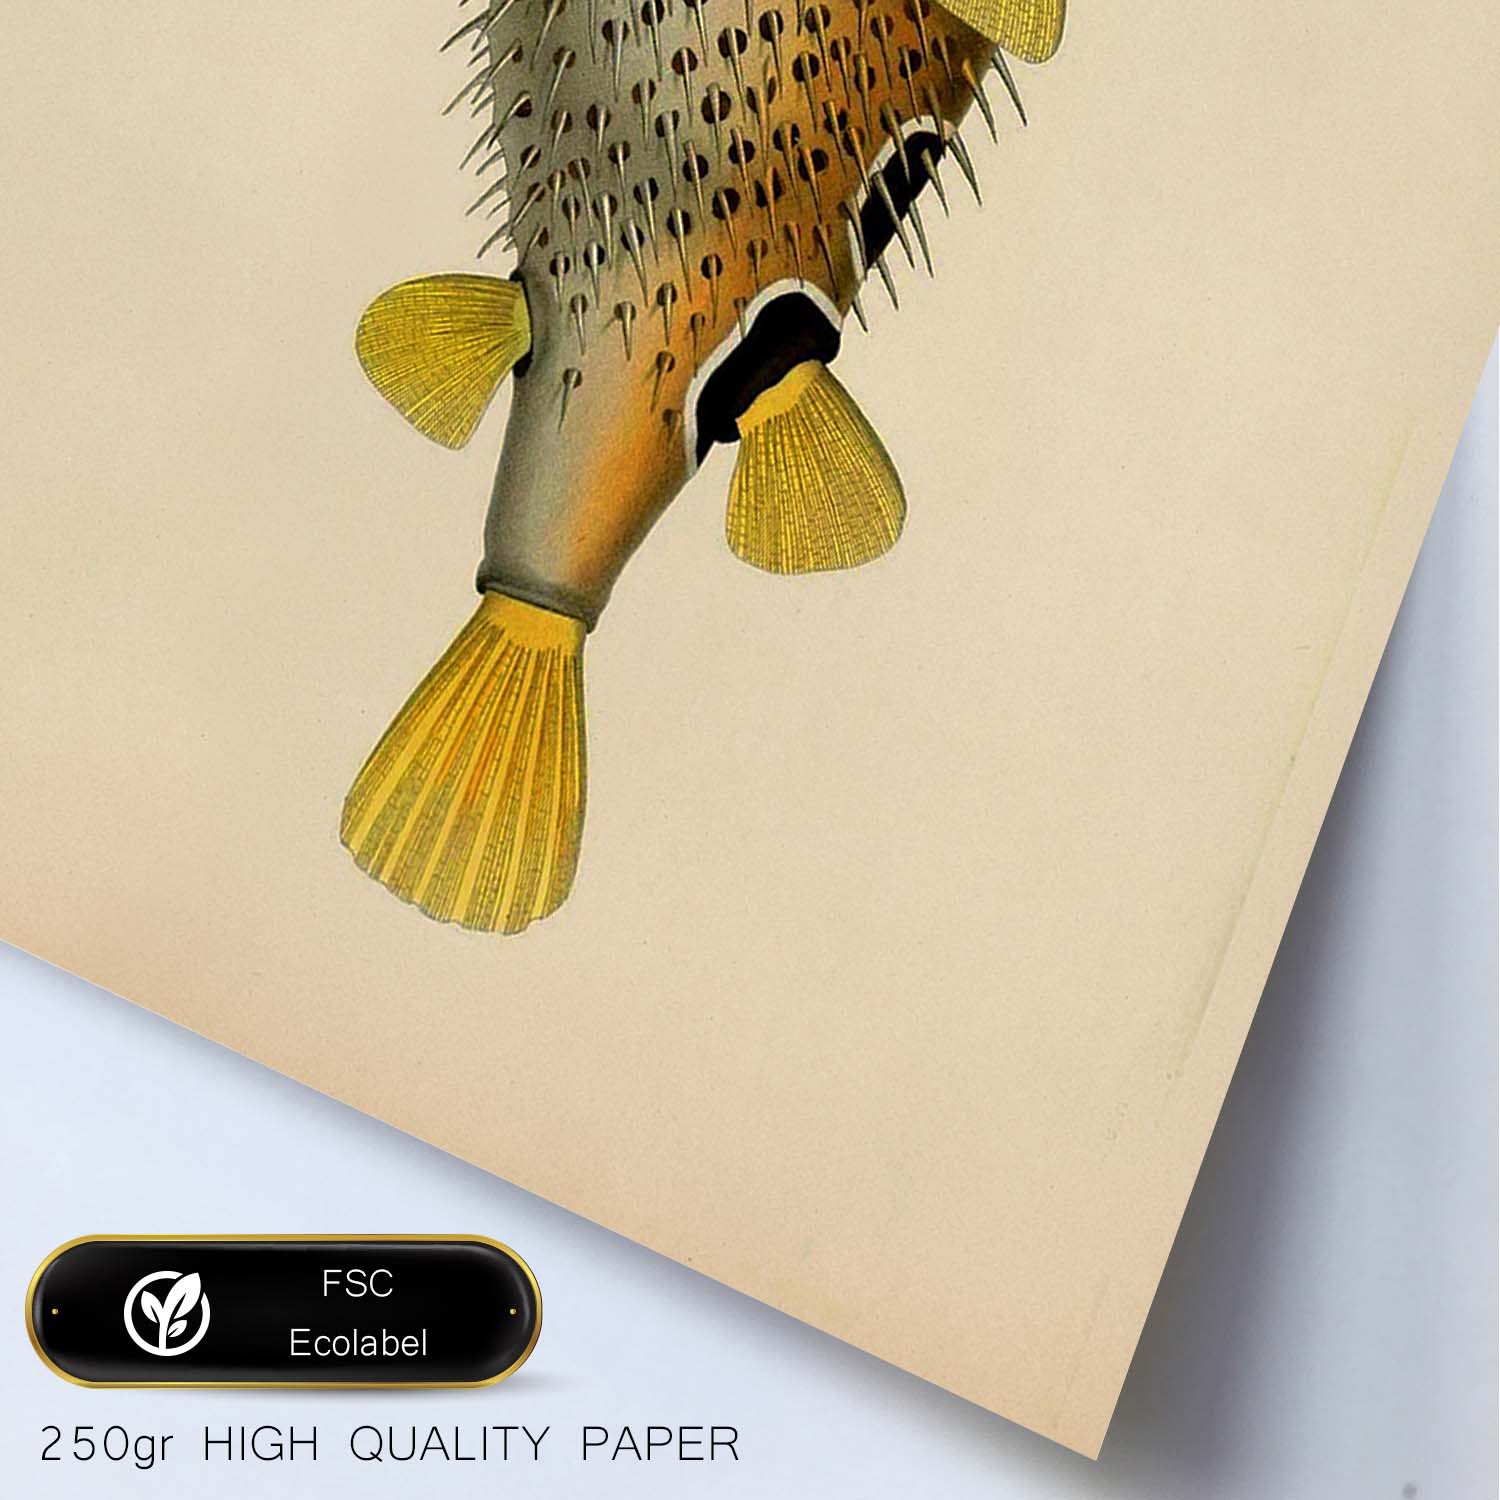 Lámina de pez amarillo, negro y blanco en , fondo papel vintage.-Artwork-Nacnic-Nacnic Estudio SL